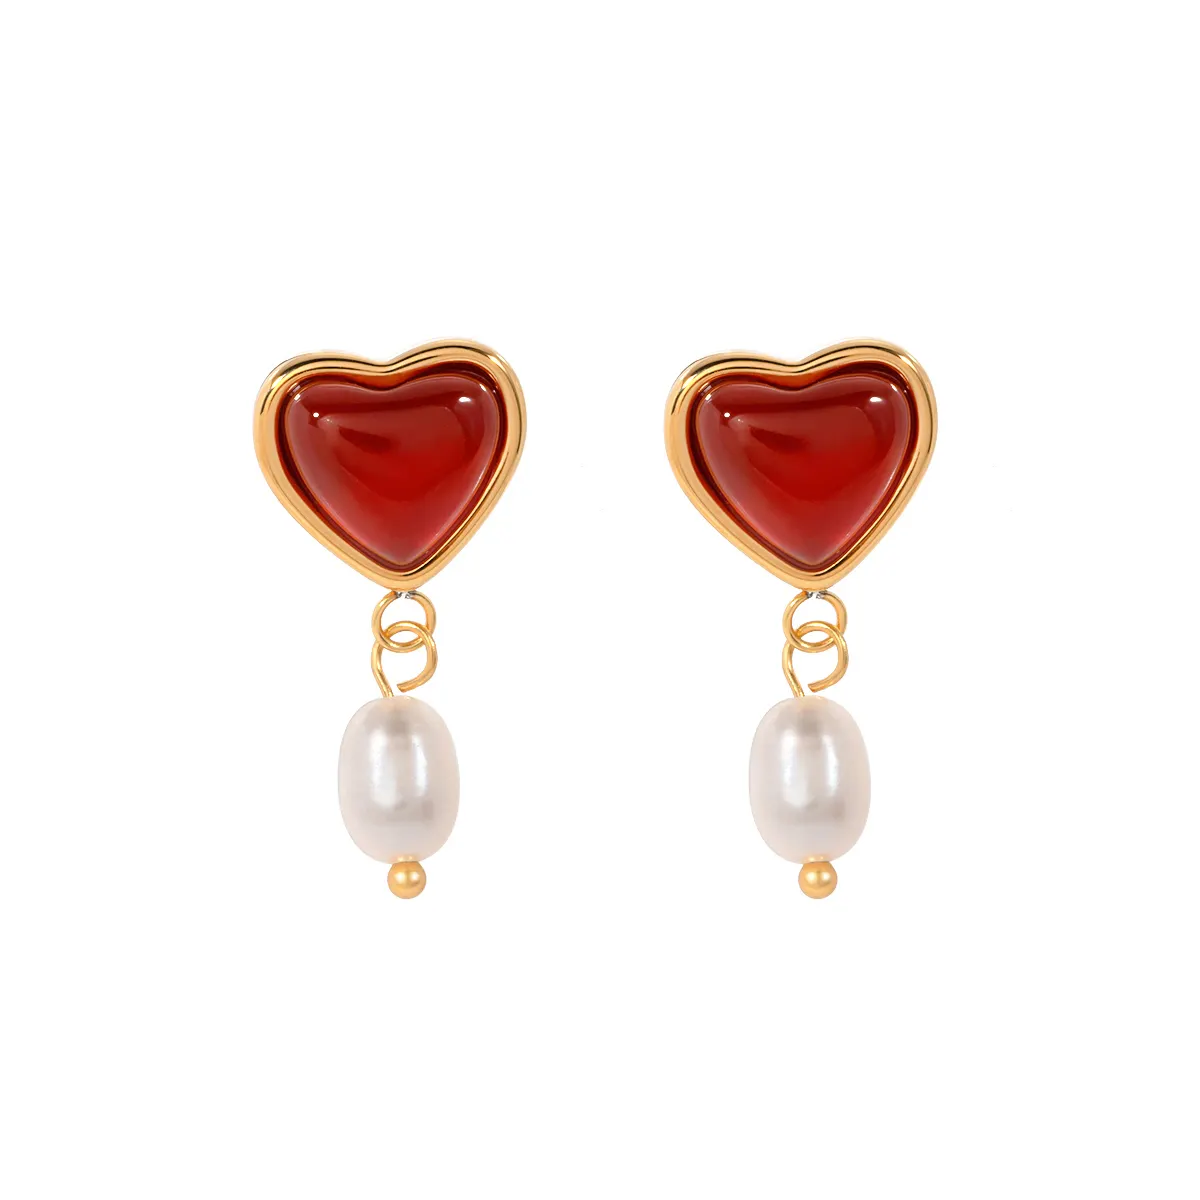 J & D san valentino romantici gioielli regalo in acciaio inox rosso agata acqua dolce perle orecchini pendenti